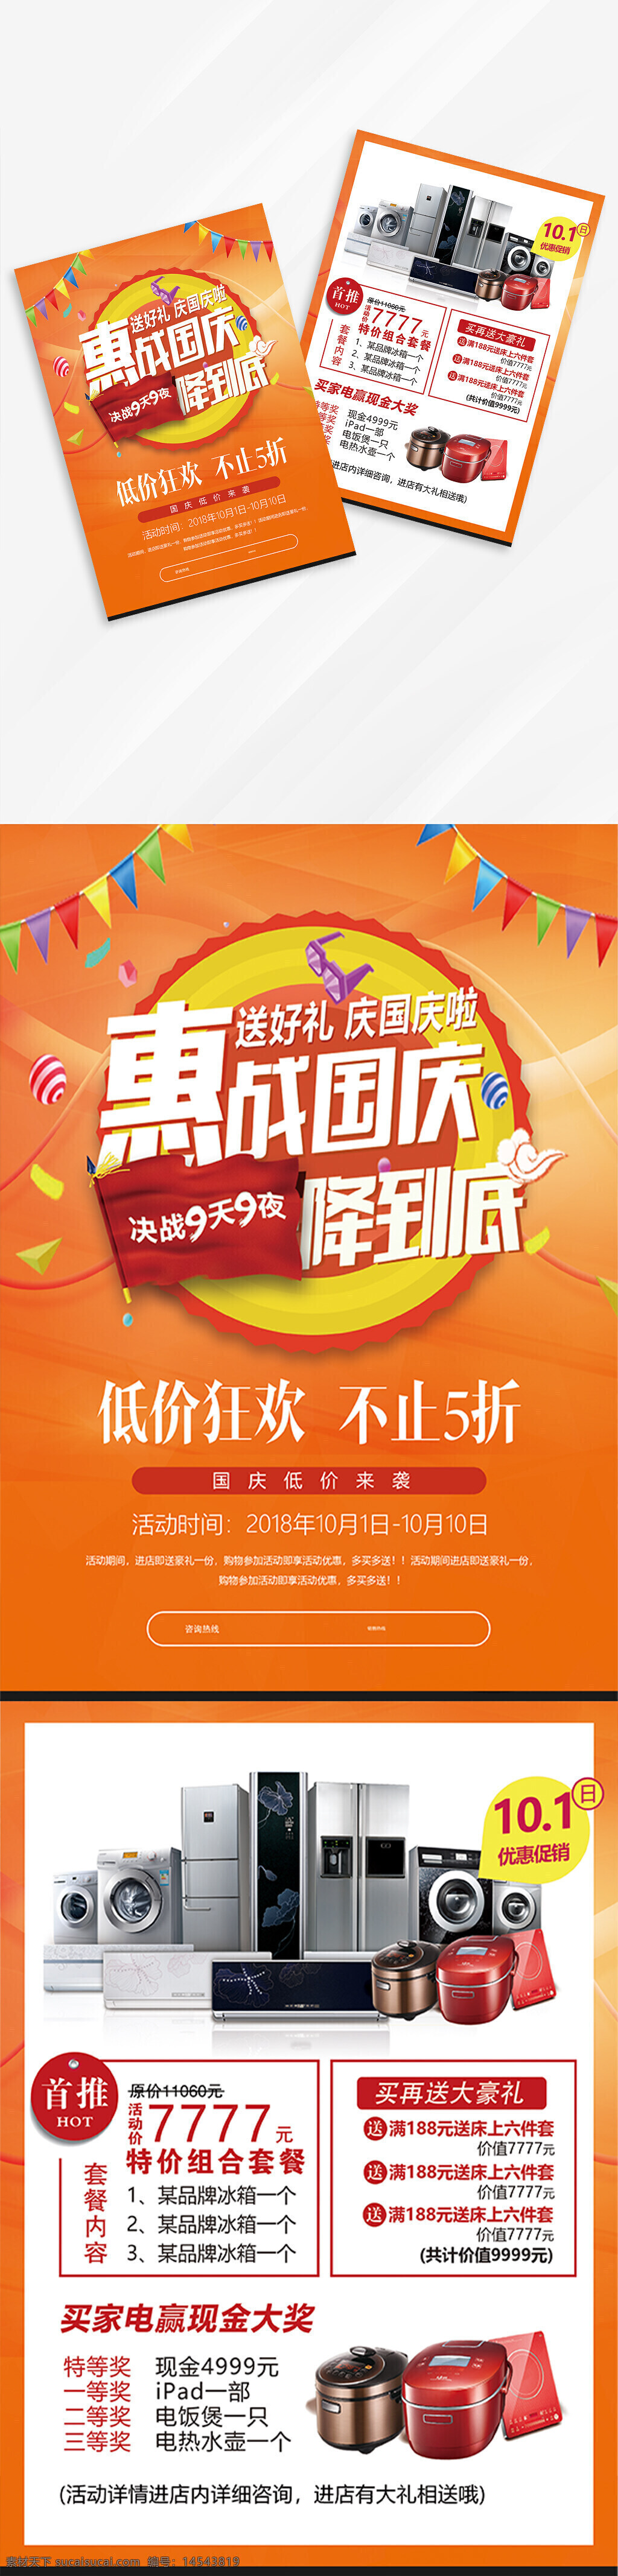 惠战 国庆 家电 电器 冰箱 促销 宣传单